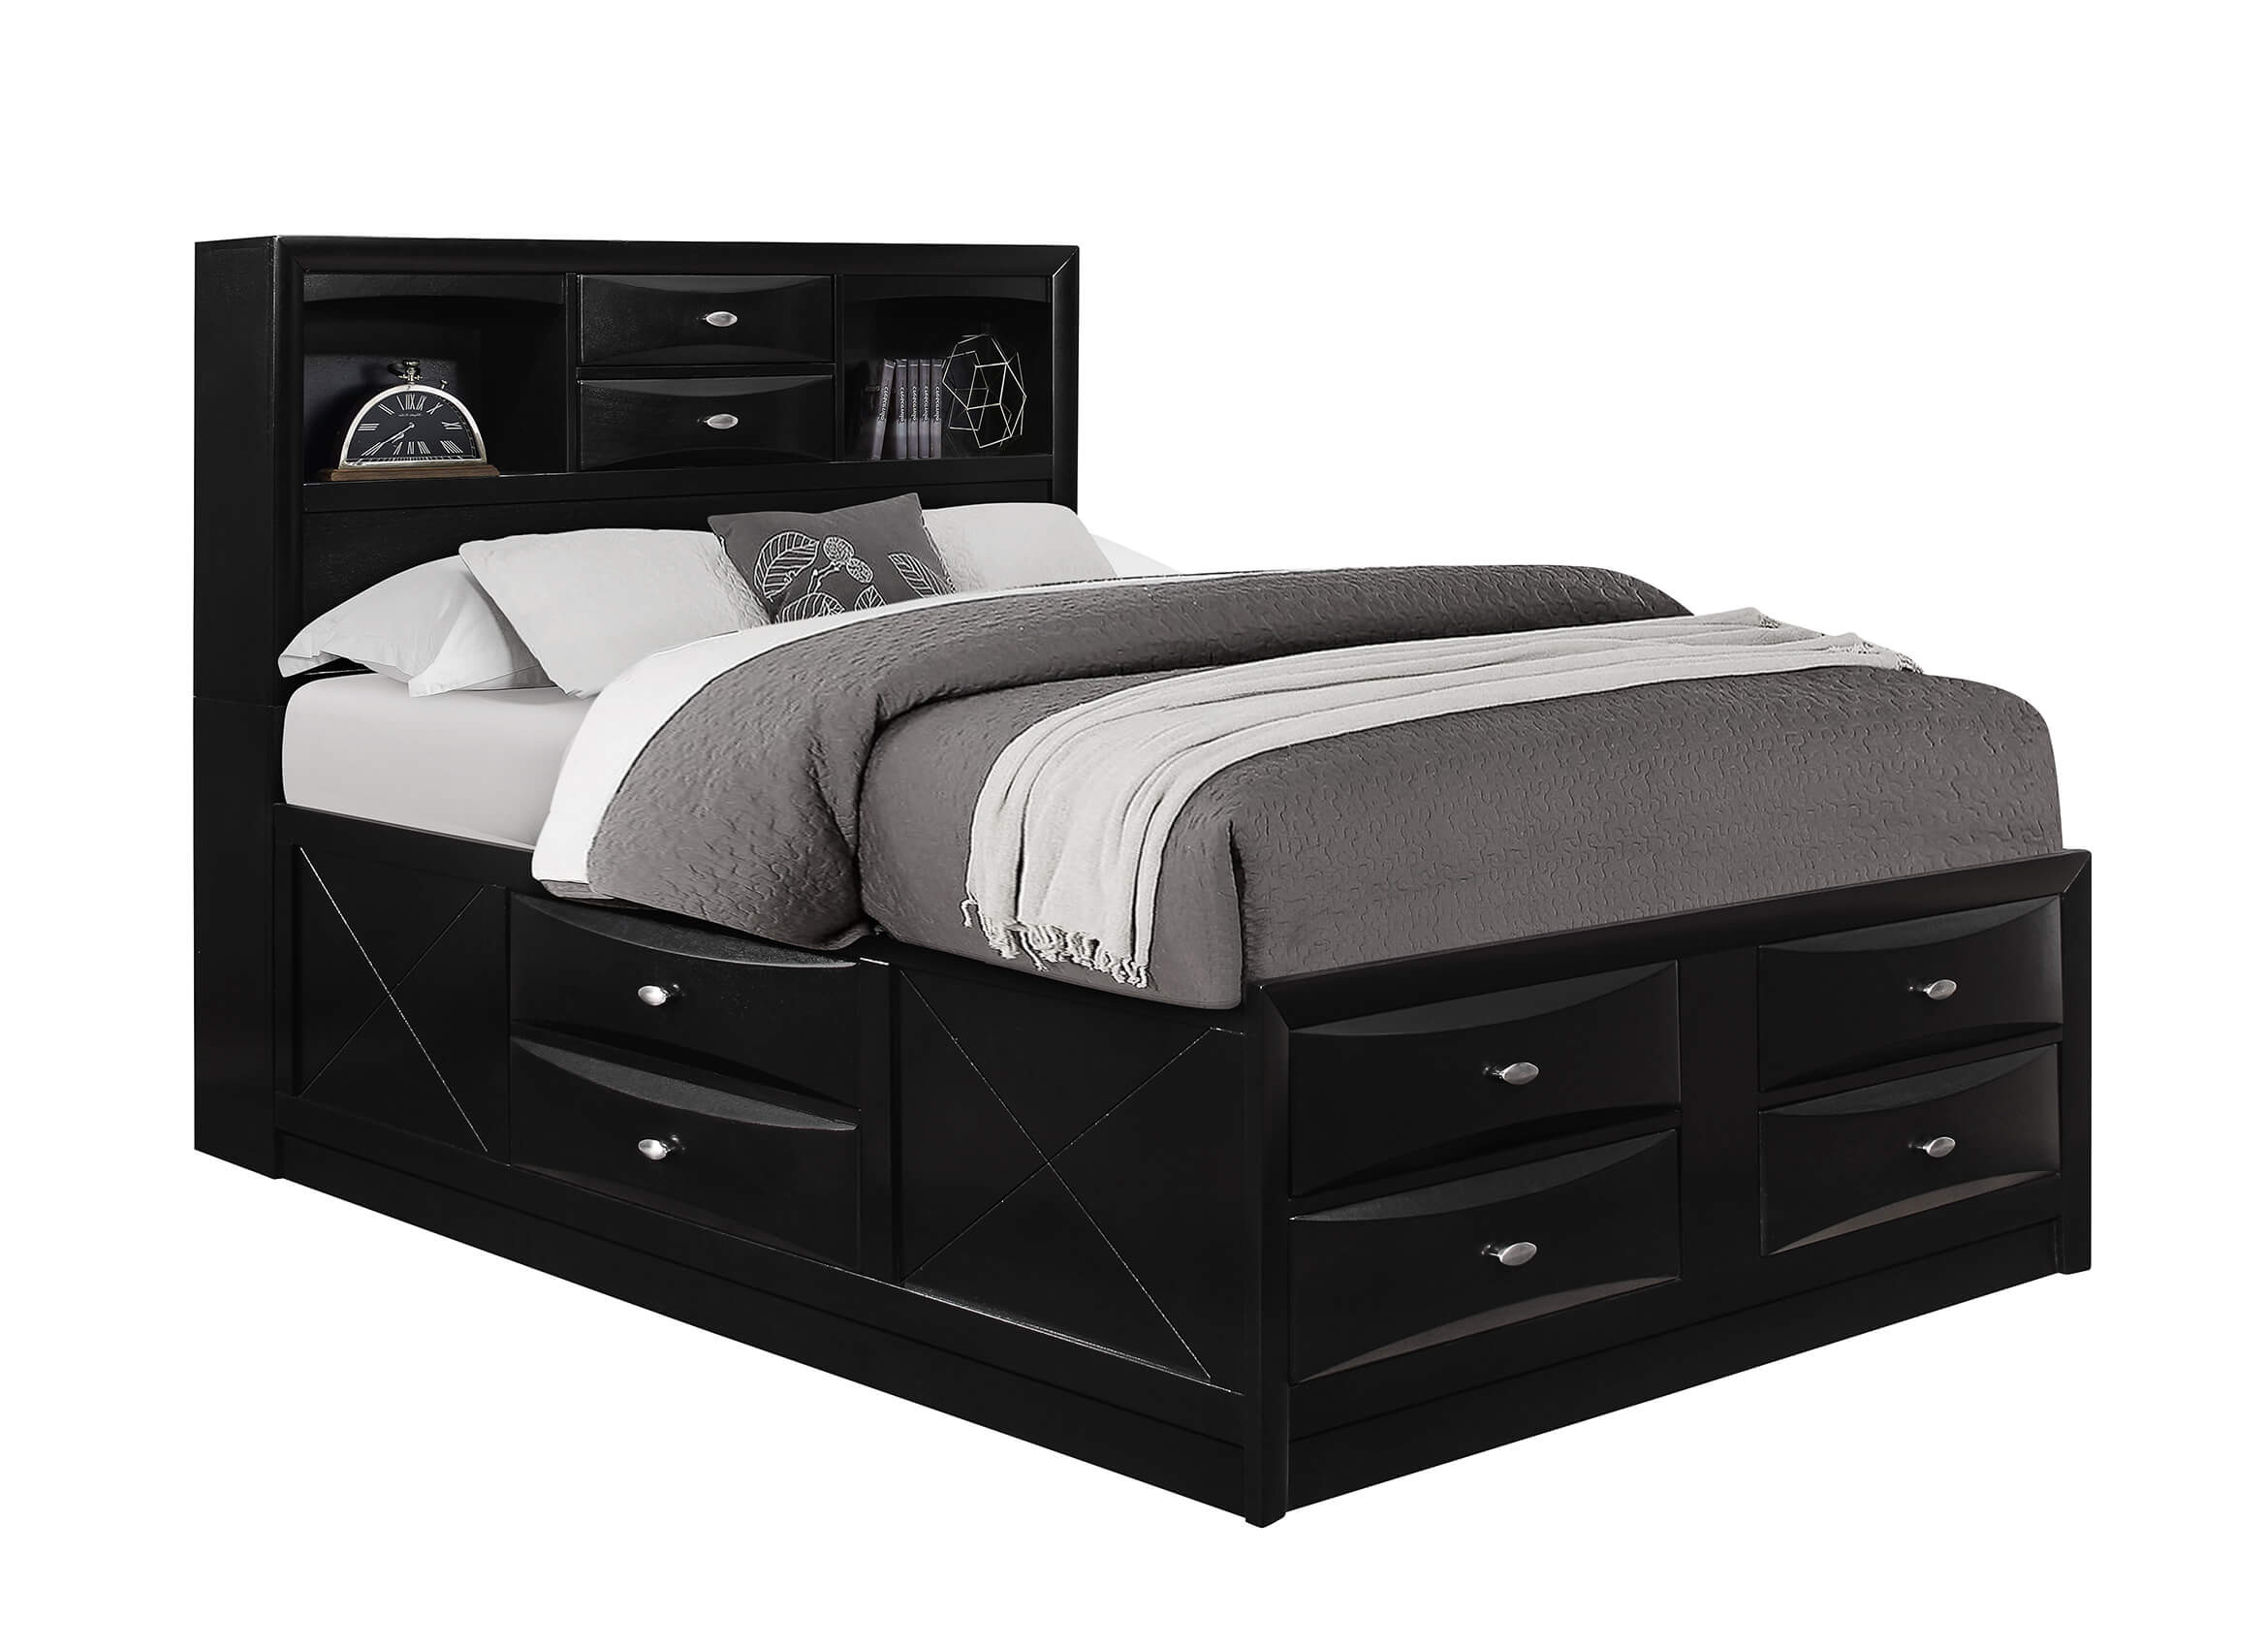 Full Size Storage Bedroom Sets
 Linda Black Full Captain Storage Bed